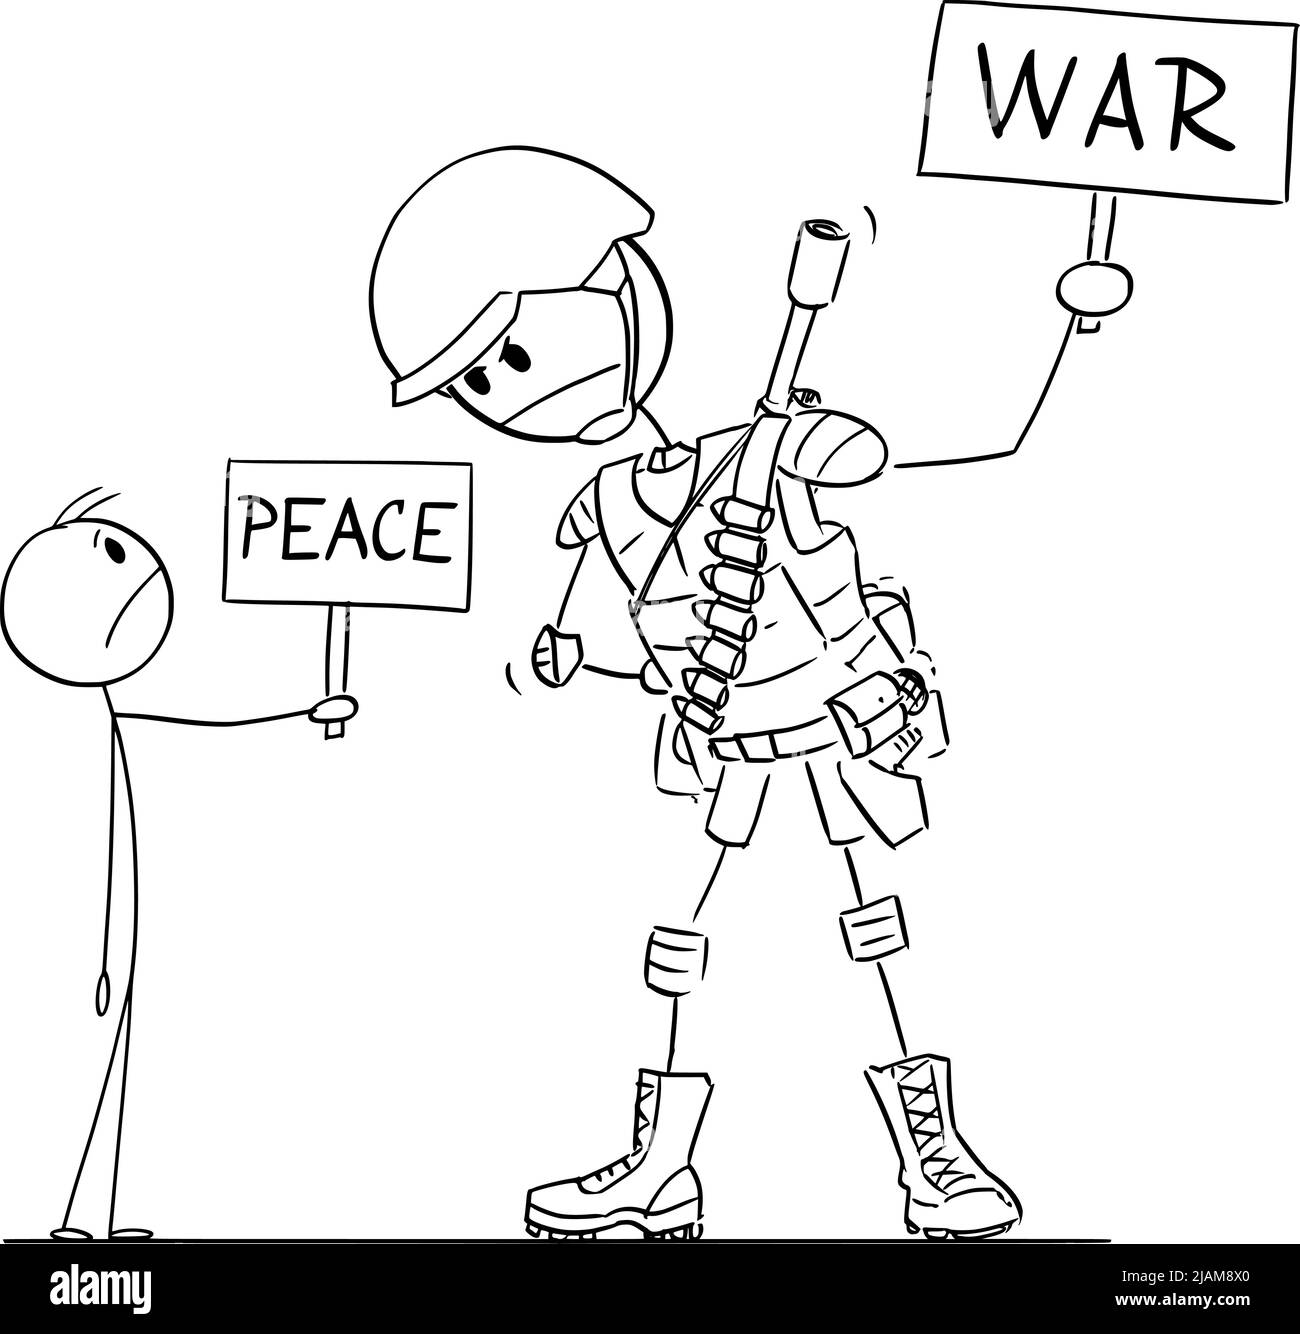 Soldat civil et armé, paix et guerre, bâton de dessin animé Illustration Illustration de Vecteur